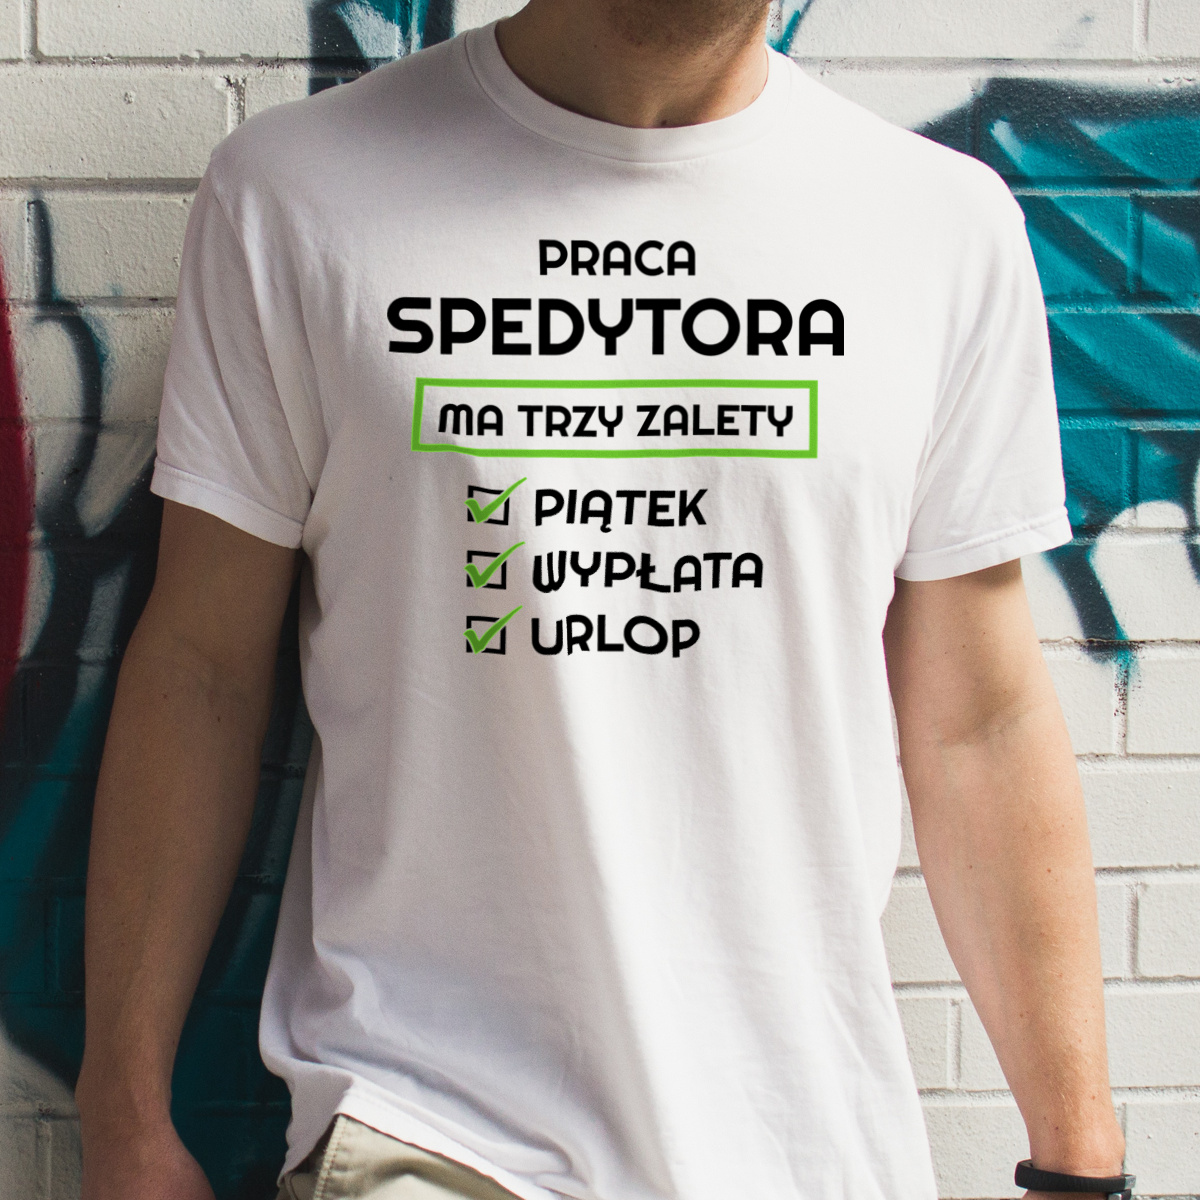 Praca Spedytora Ma Swoje Trzy Zalety - Męska Koszulka Biała